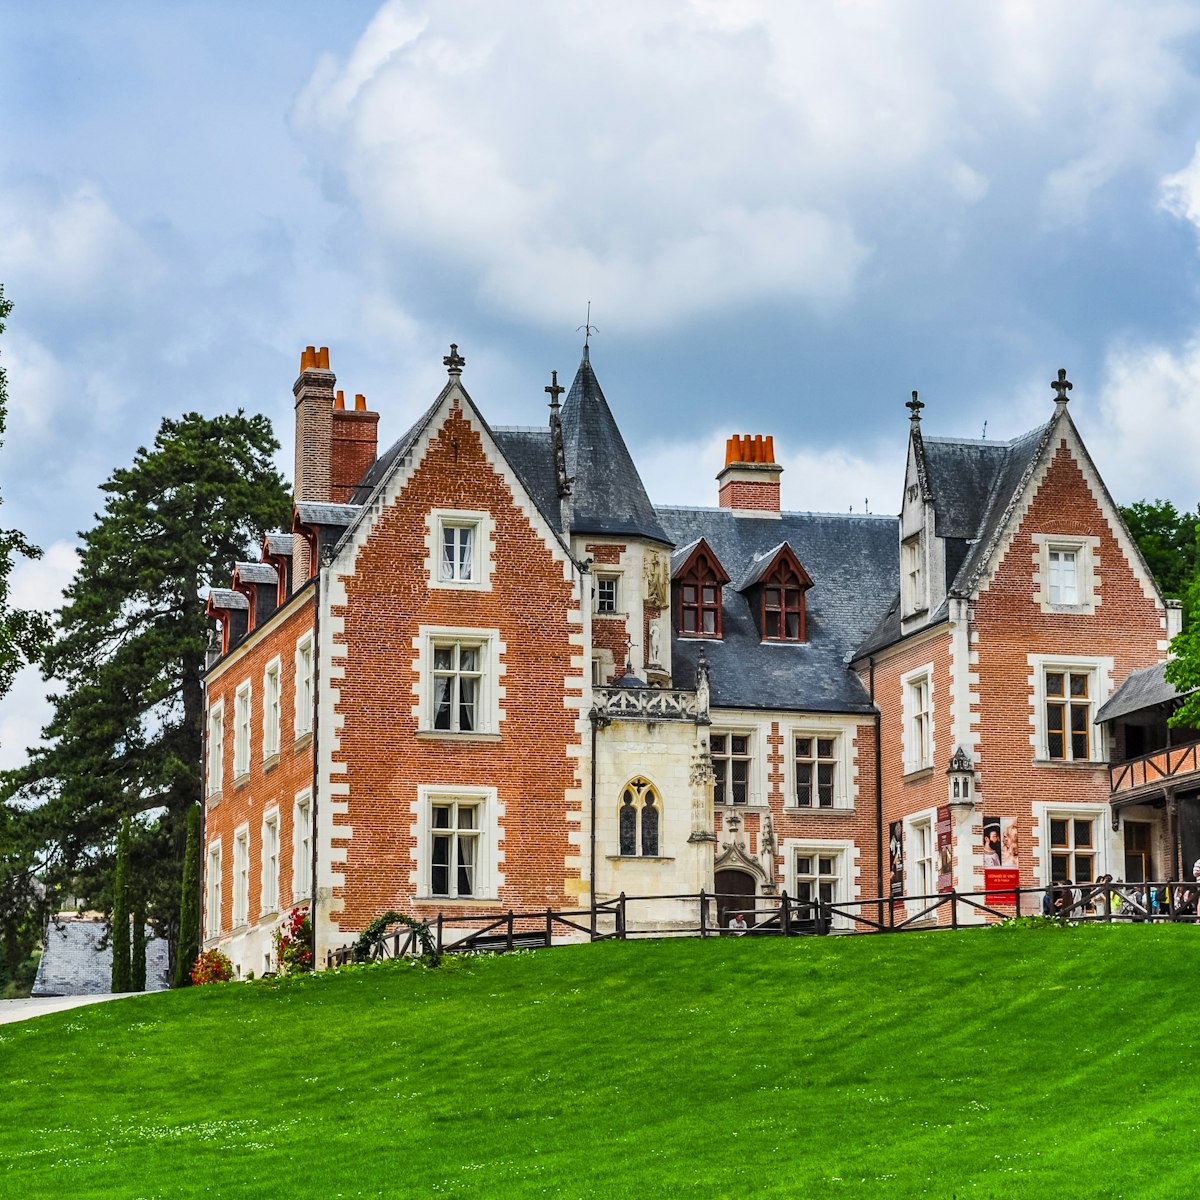 Chateau du Clos Luce castle, Amboise, France.